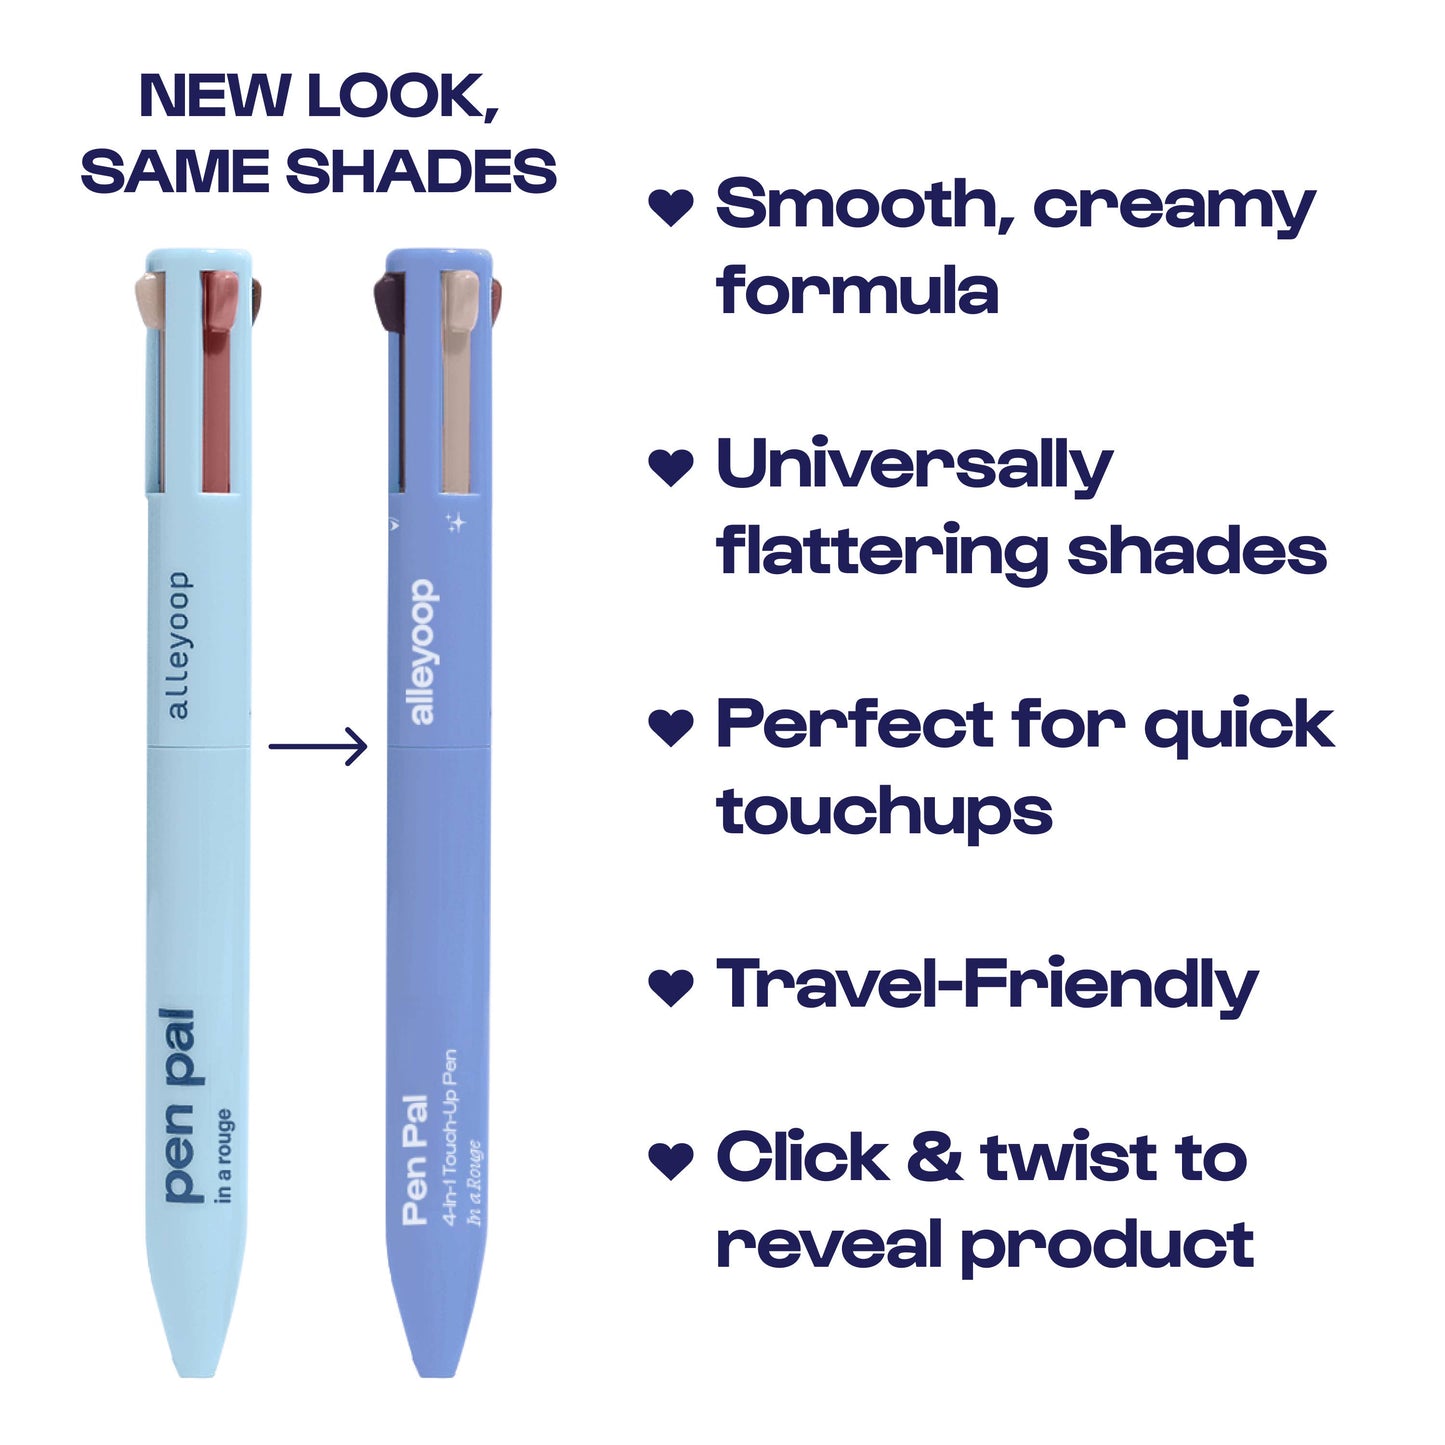 Alleyoop Pen Pal 4-in-1 Makeup Touch Up Pen